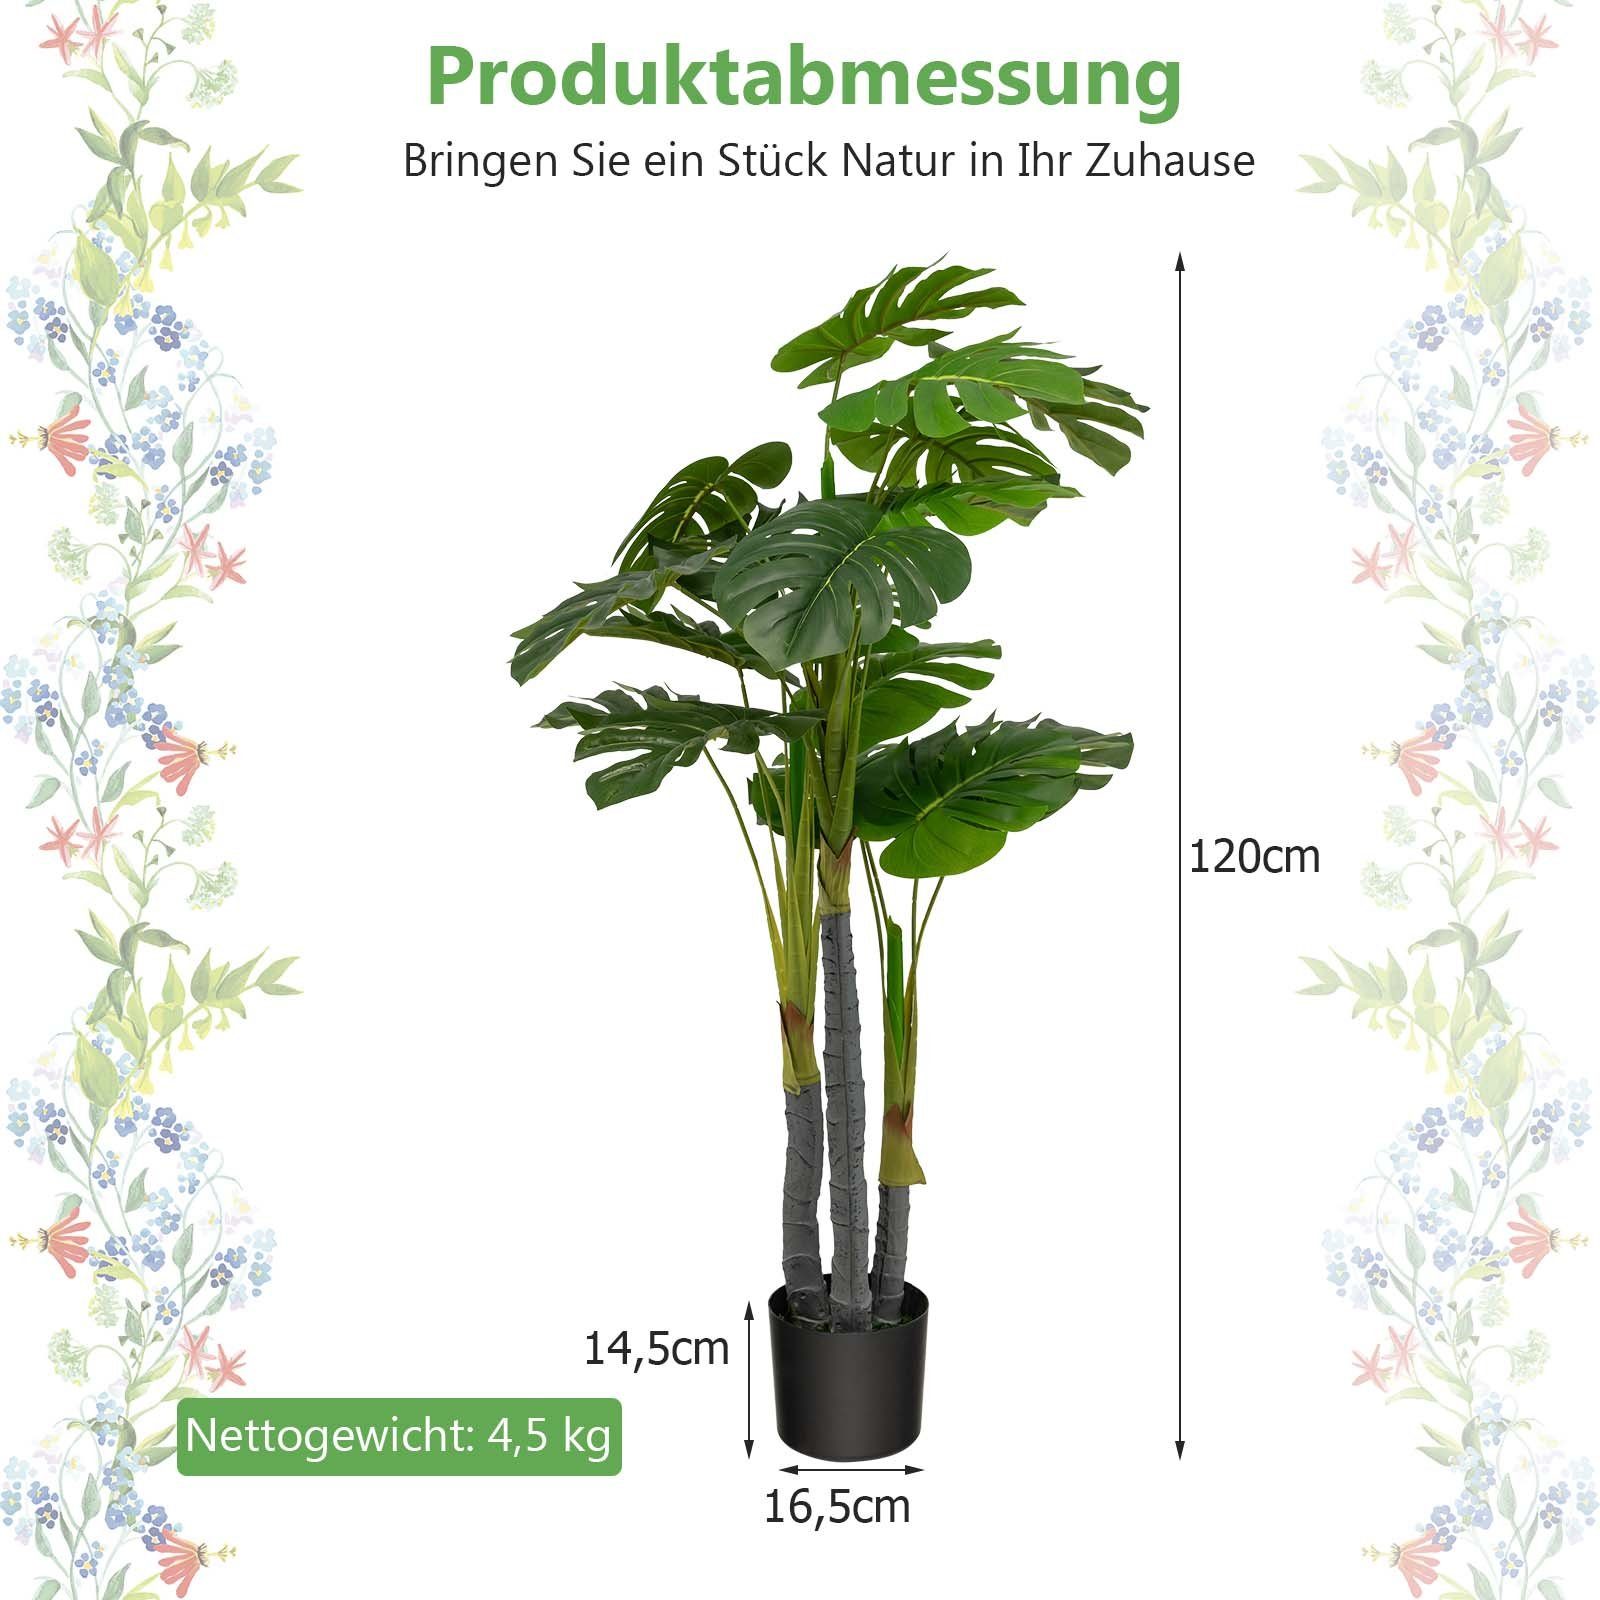 Kunstpflanze, COSTWAY, Höhe 120 cm, mit Kunststoff-Topf, grün Blättern, 20